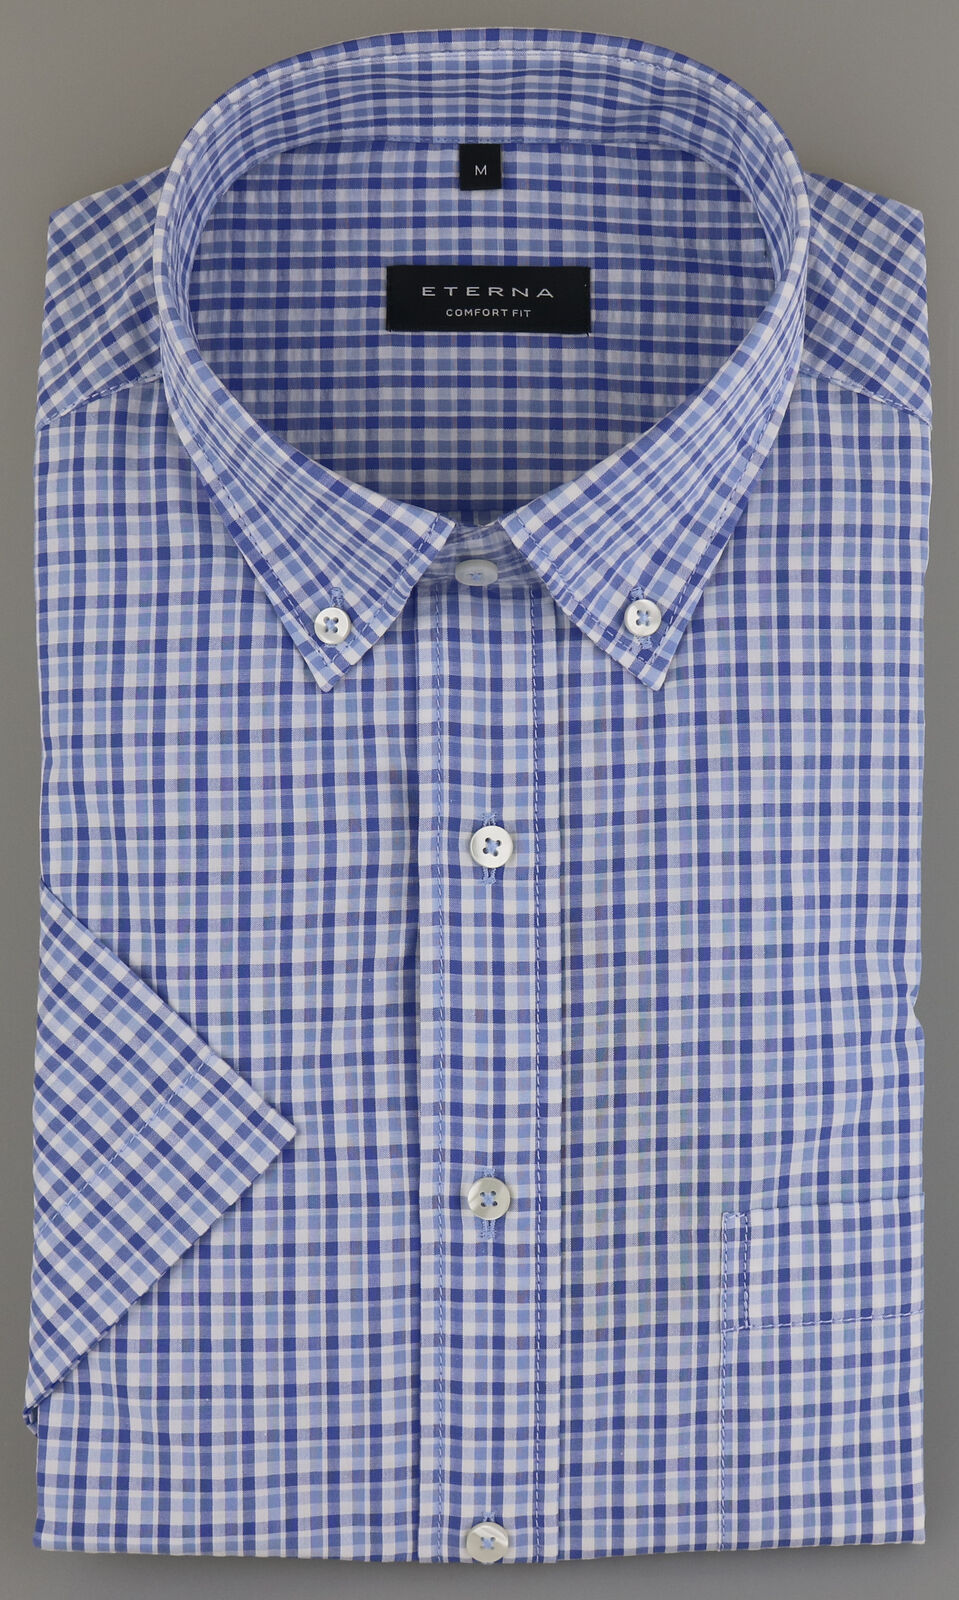 Eterna Short Sleeve Shirt Blue-white Checked 2374-12-k294 - Comfort Fit Men